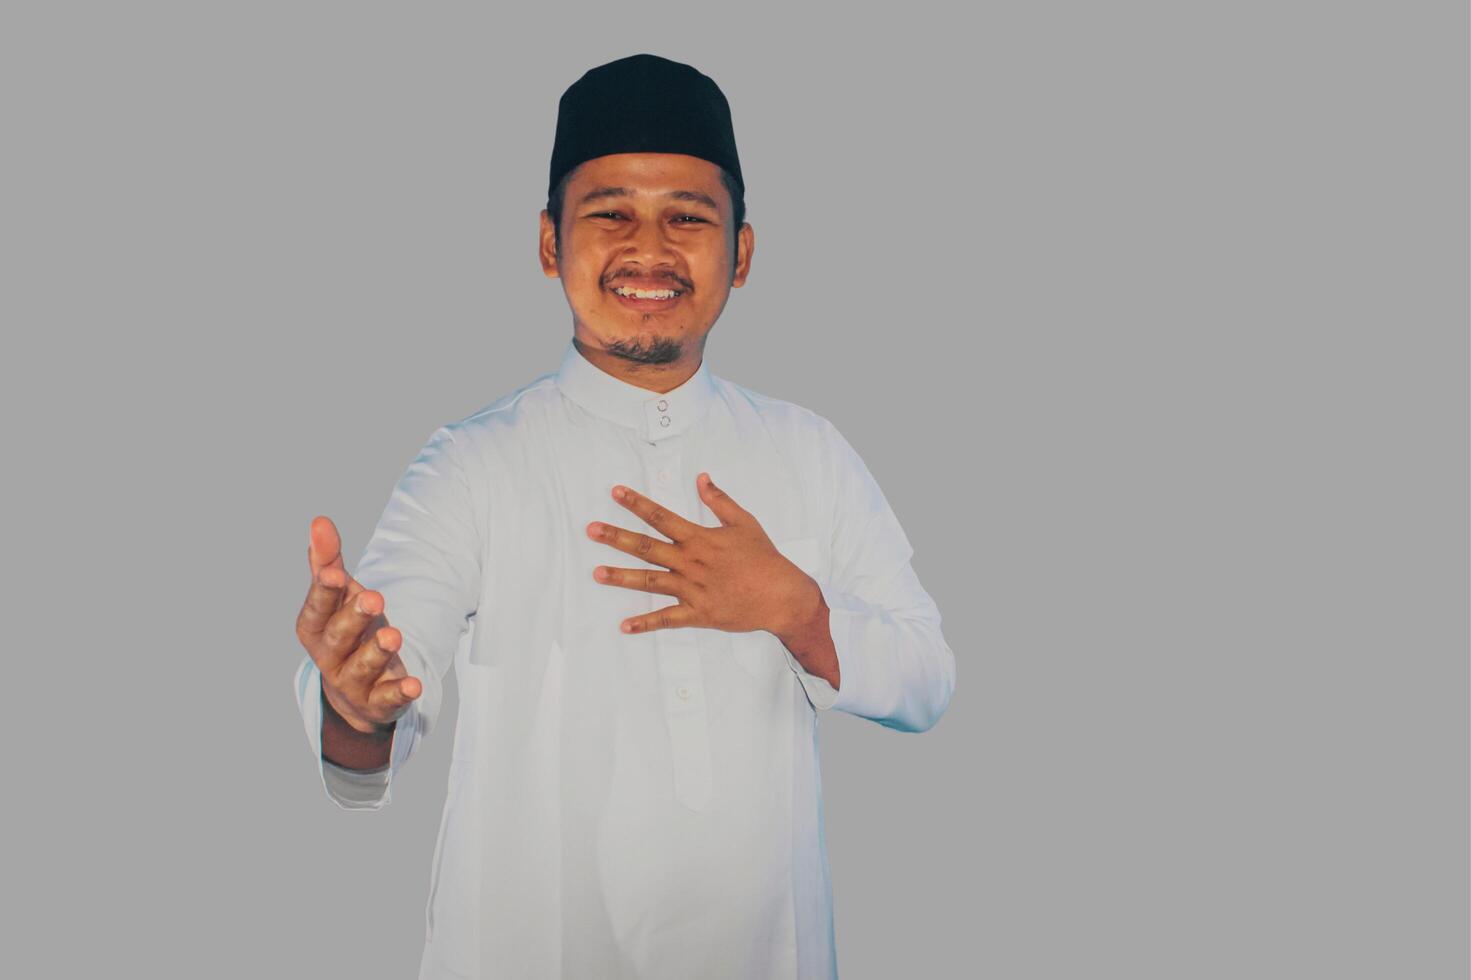 musulmano asiatico uomo sorridente amichevole quando offerta mano shake foto